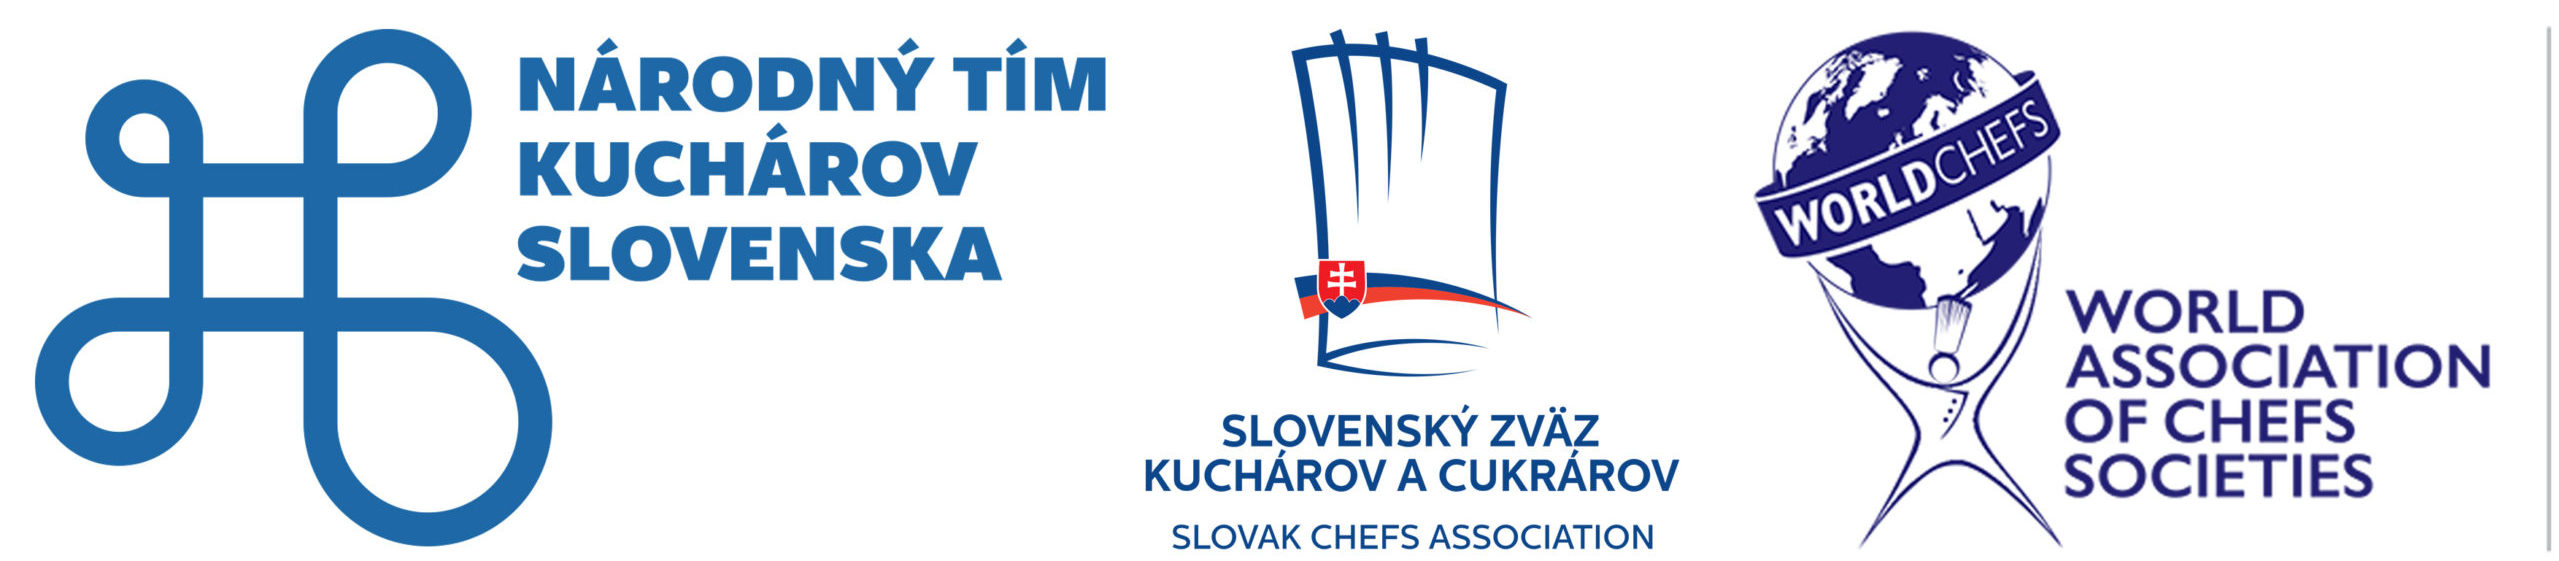 Národný tím kuchárov Slovenska